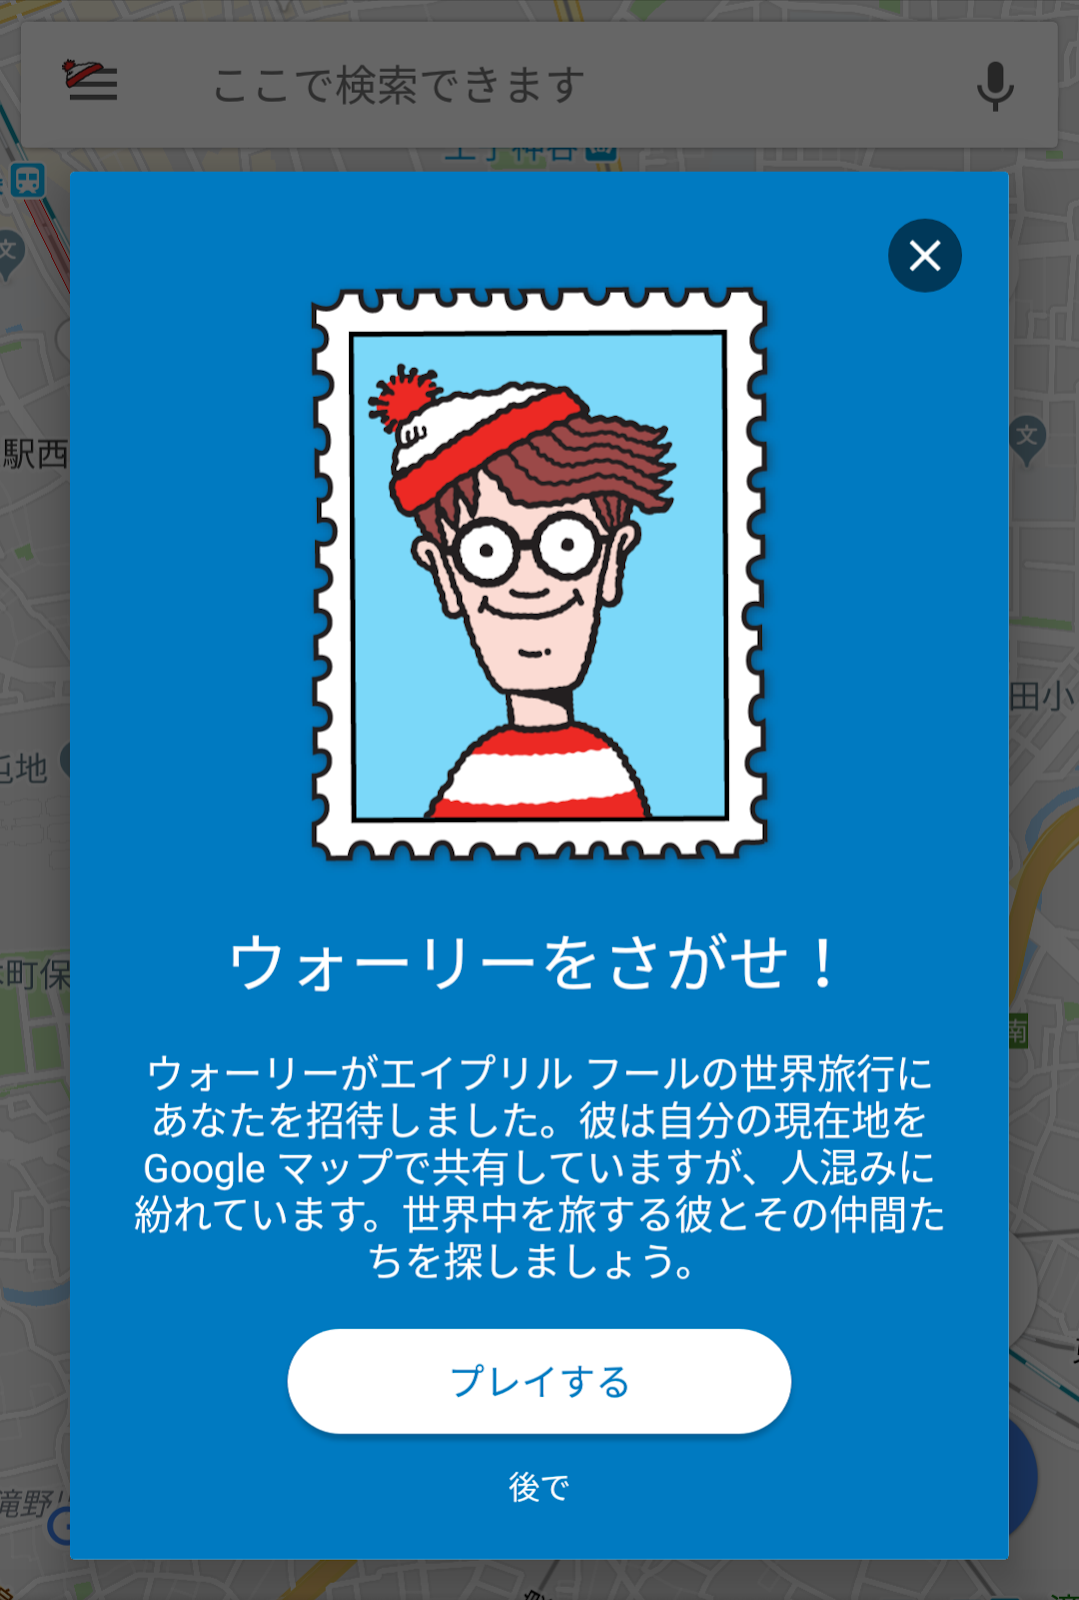 Google Japan Blog Google マップでウォーリーをさがせ